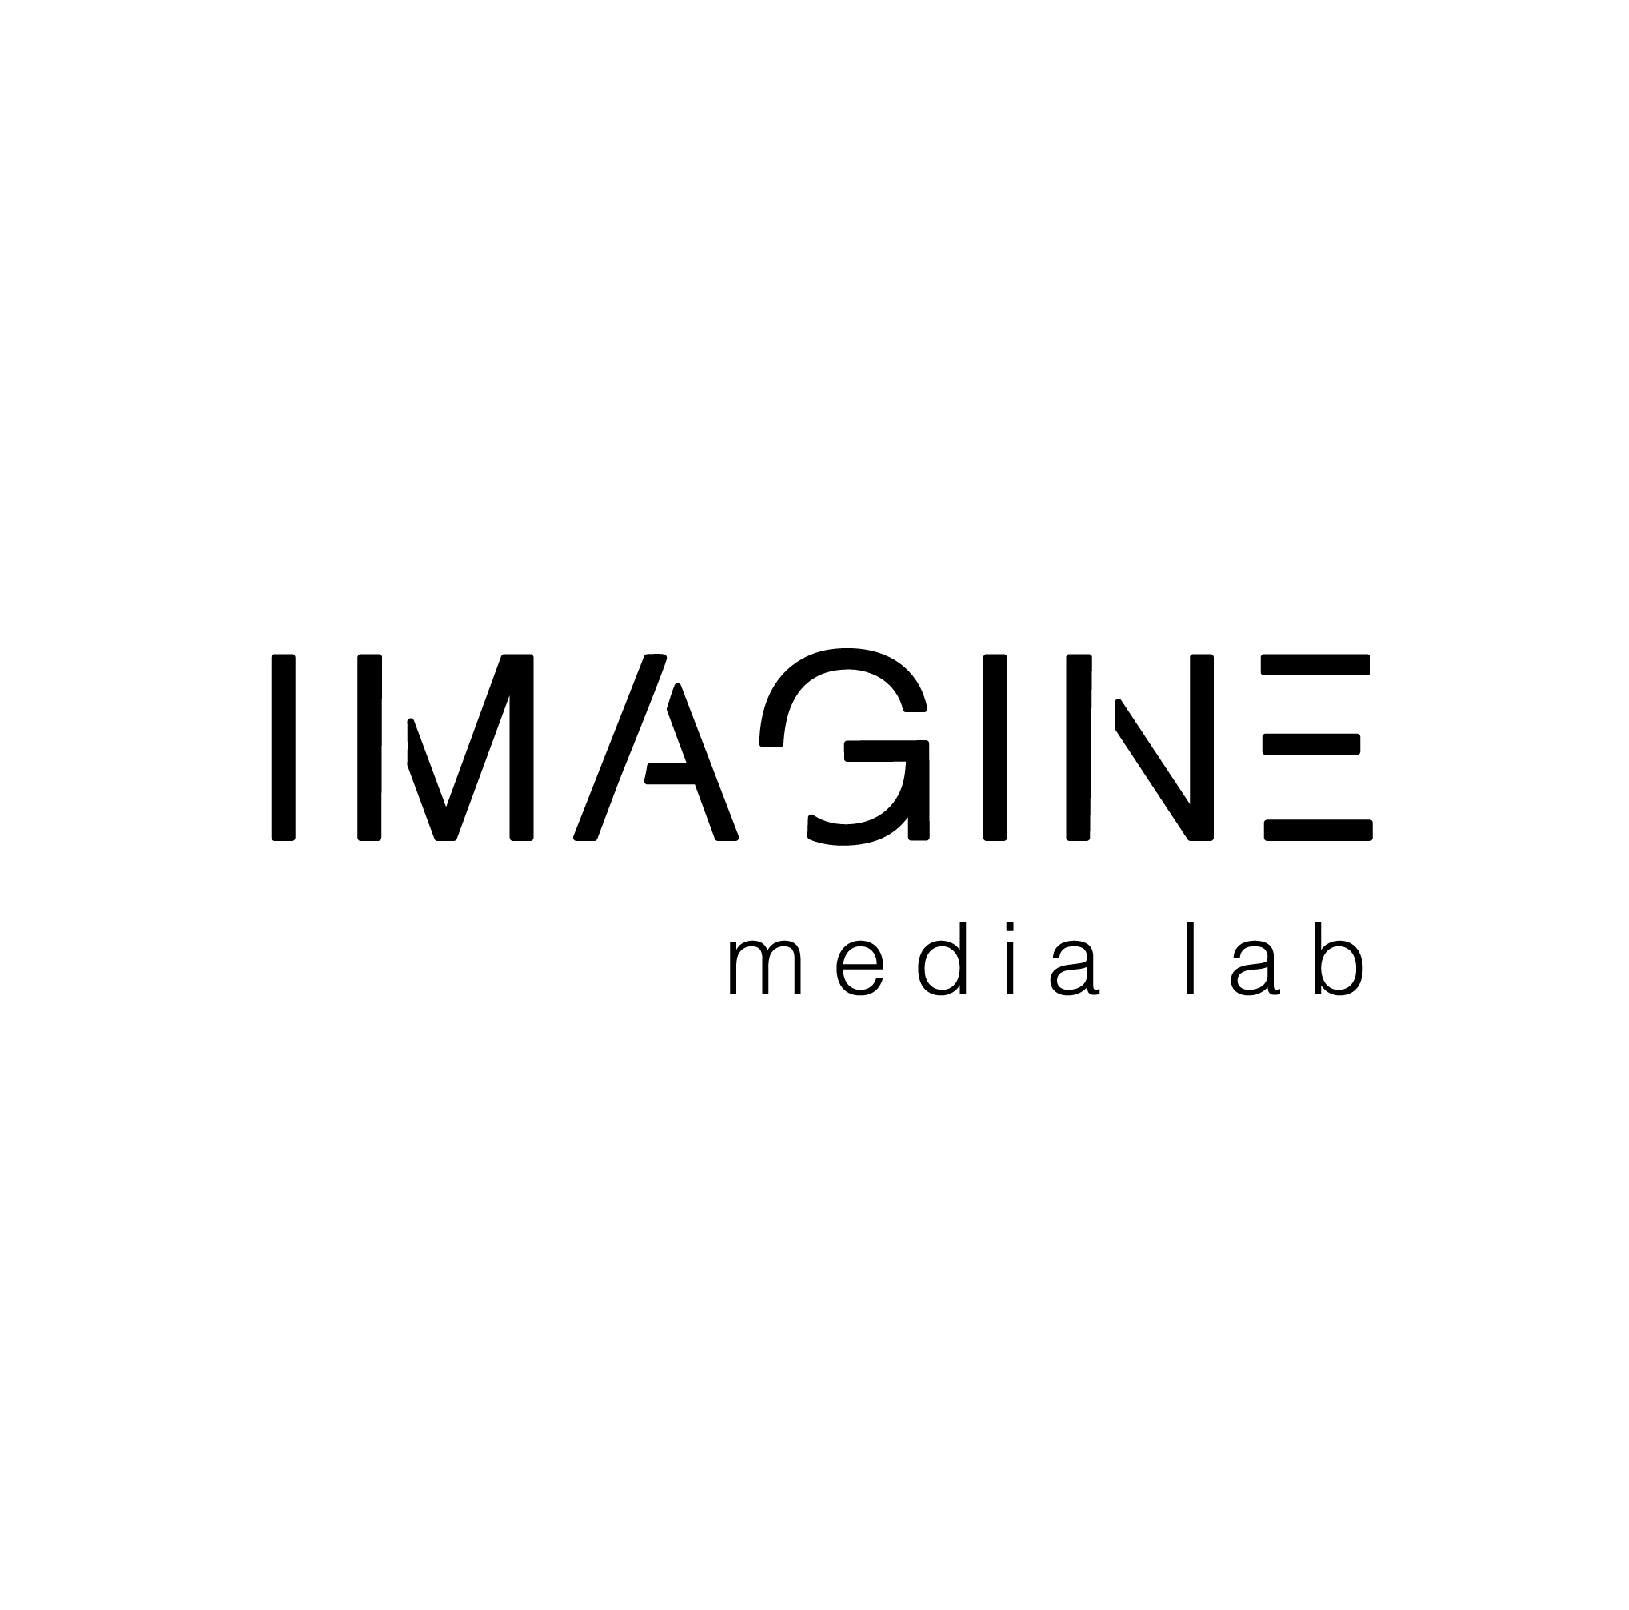 IMAGINE Media Lab-01